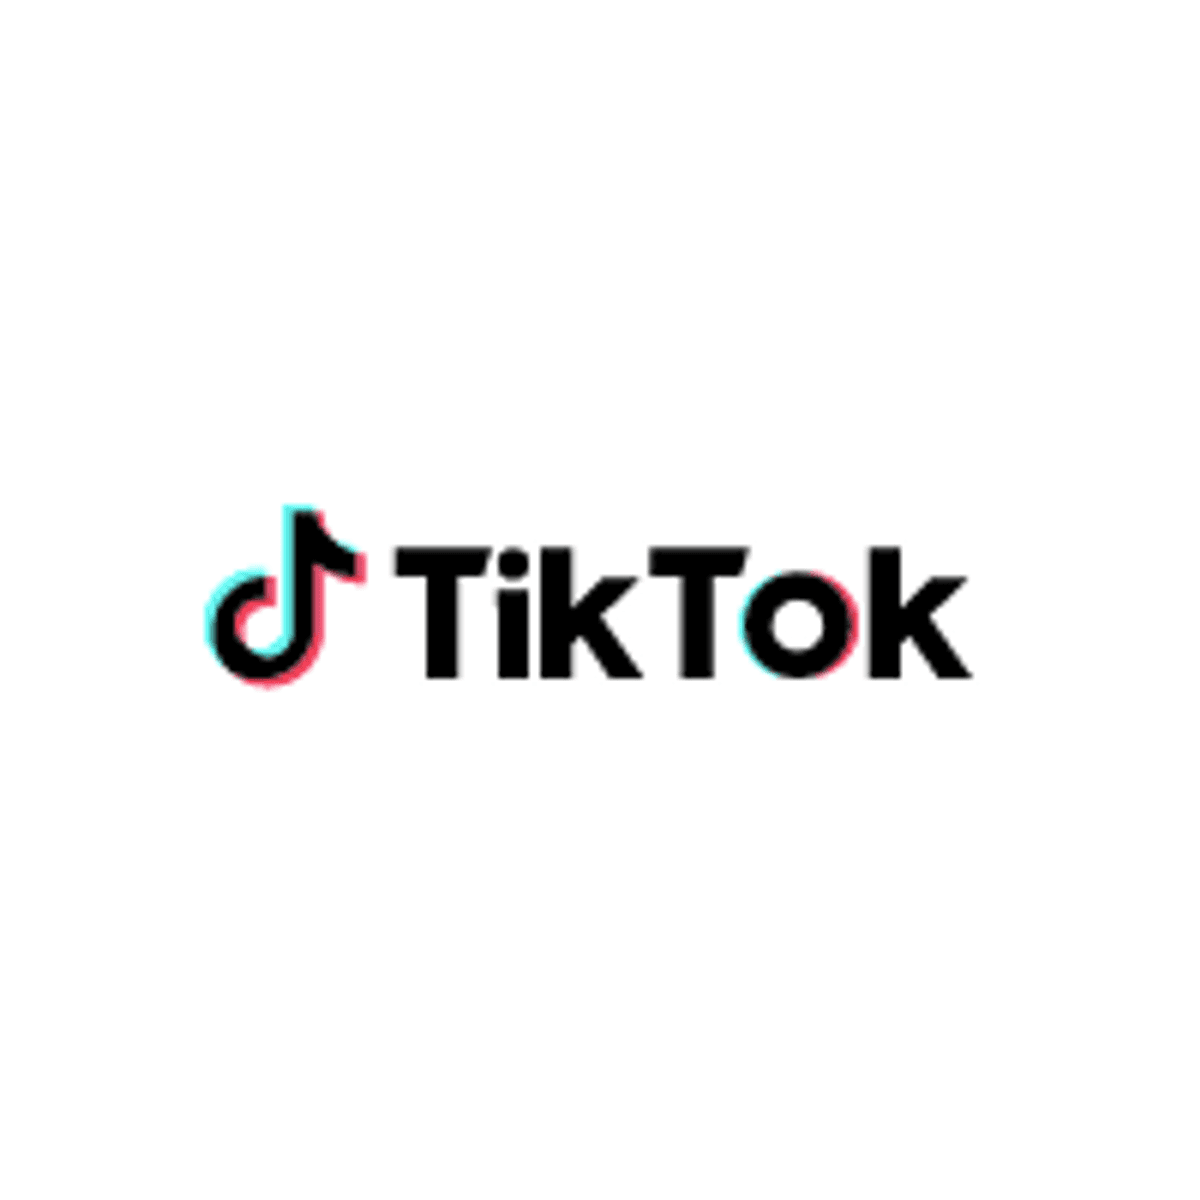 Nederlandse stichting dagvaardt TikTok voor schenden van privacy kinderen image